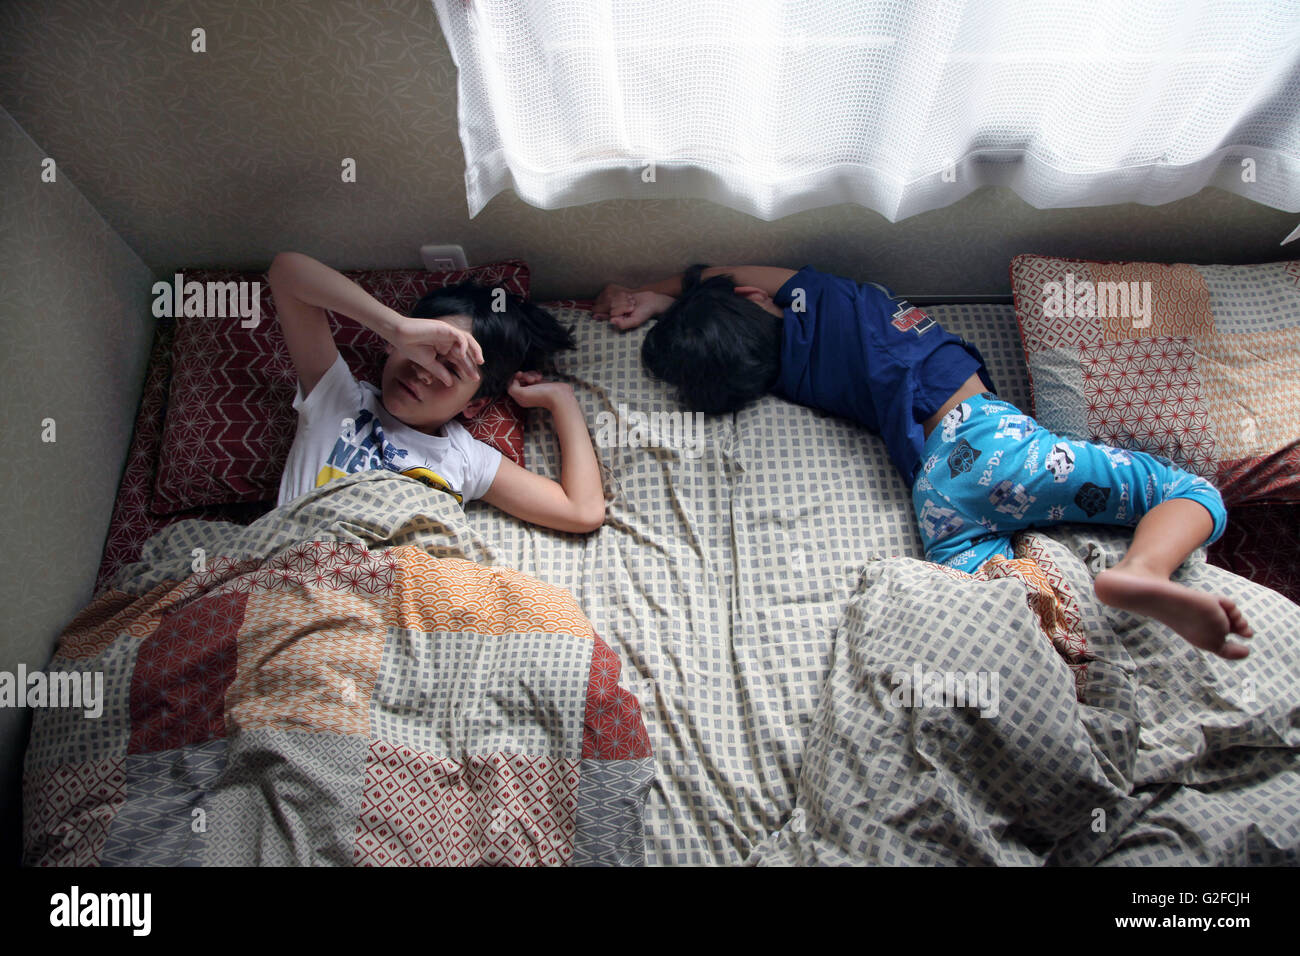 Morgen Zeit. 2 Schlafsäcke jungen beginnen zu wecken Stockfotografie - Alamy